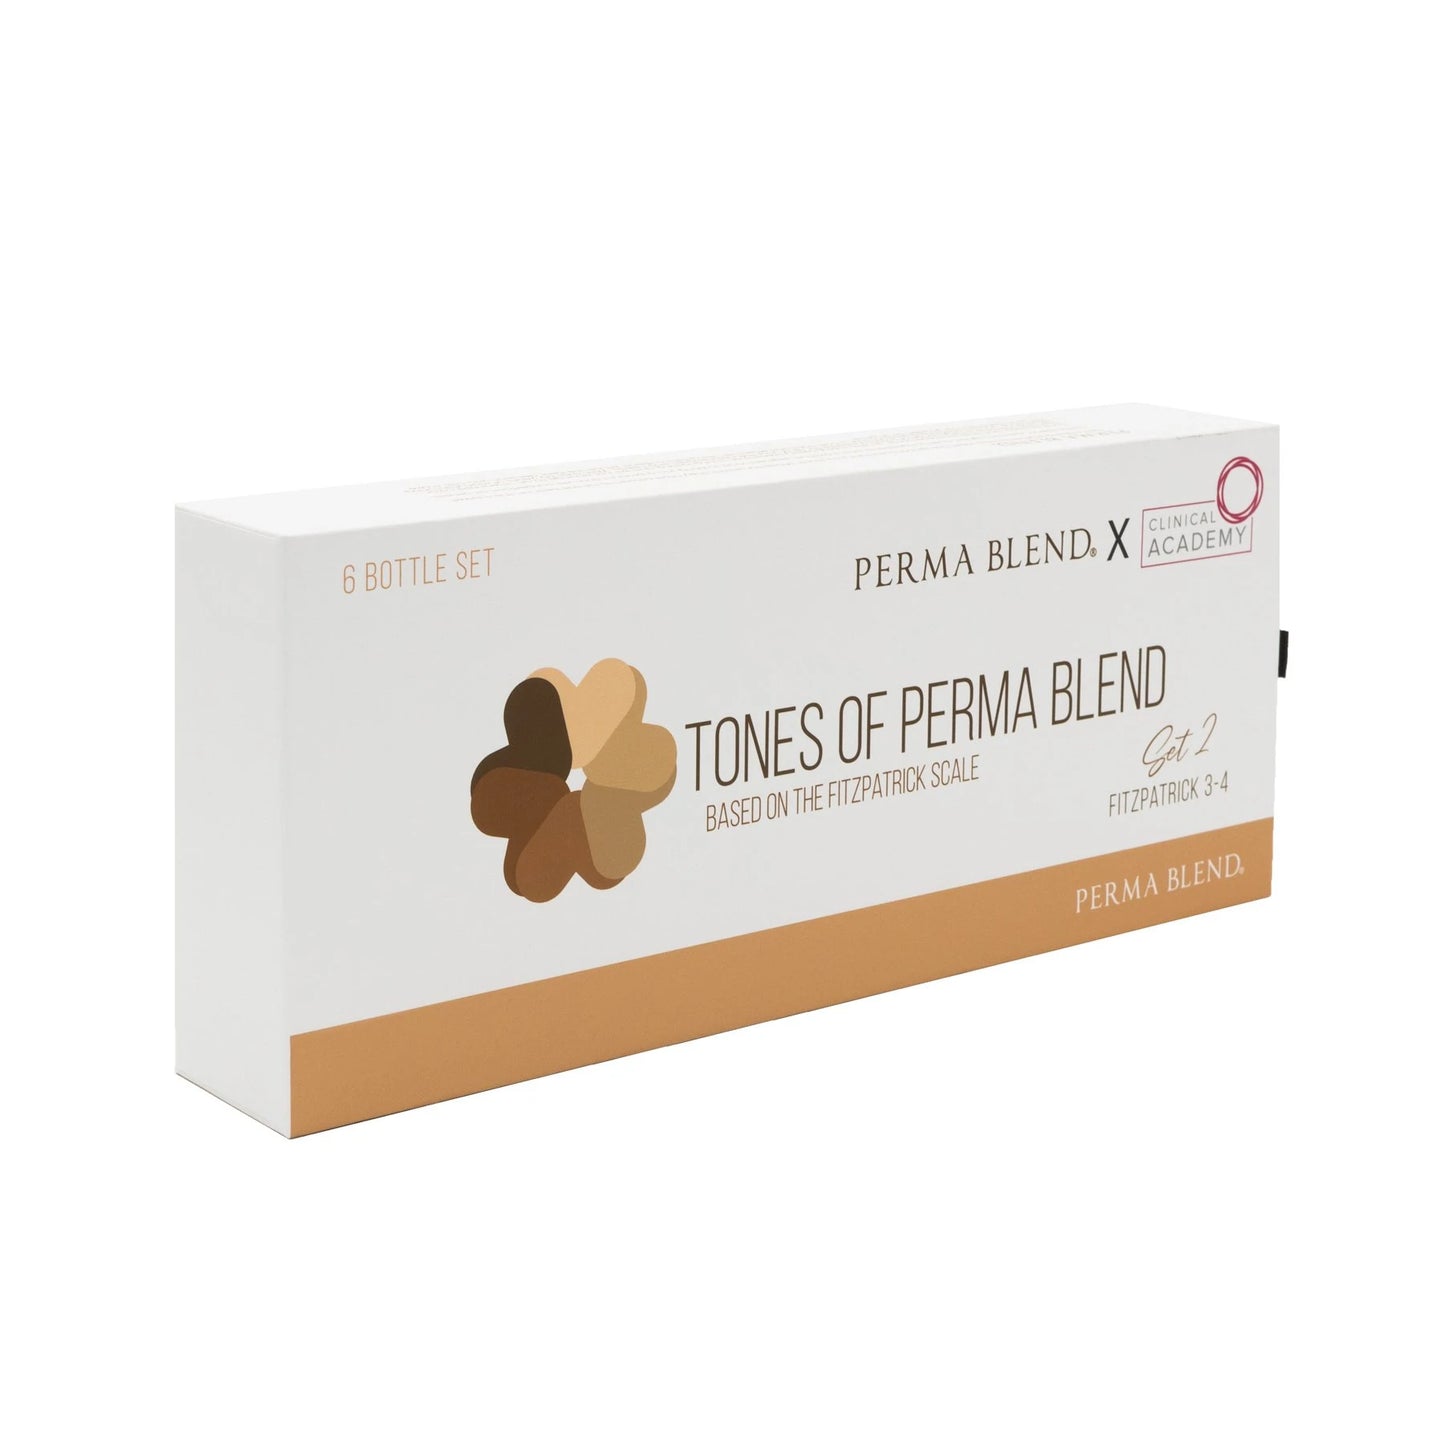 Tones of Perma Blend - Fitzpatrick 3-4 Set